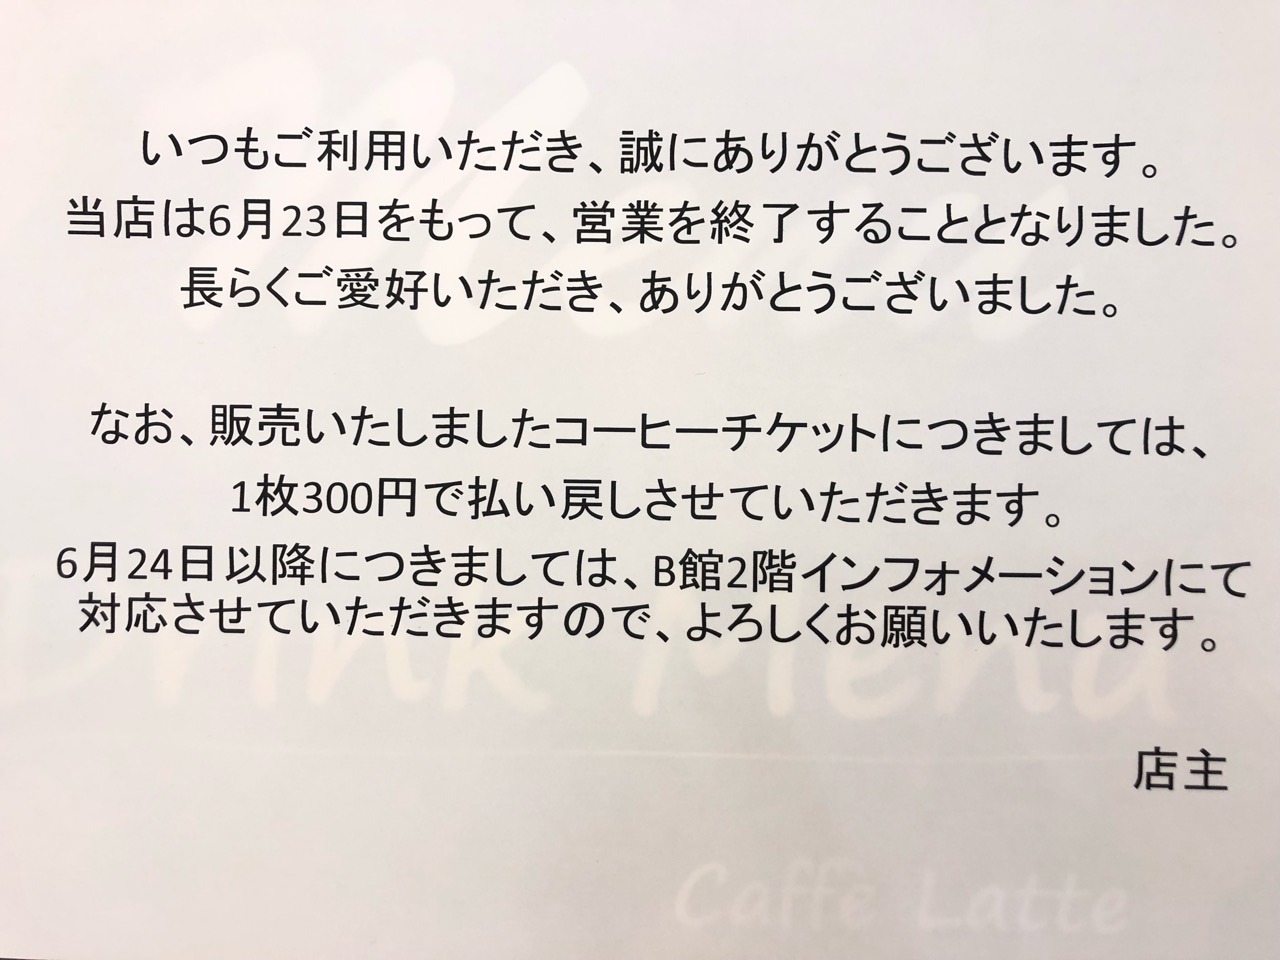 Studio cafe ZOO ADVENTURE閉店のお知らせ